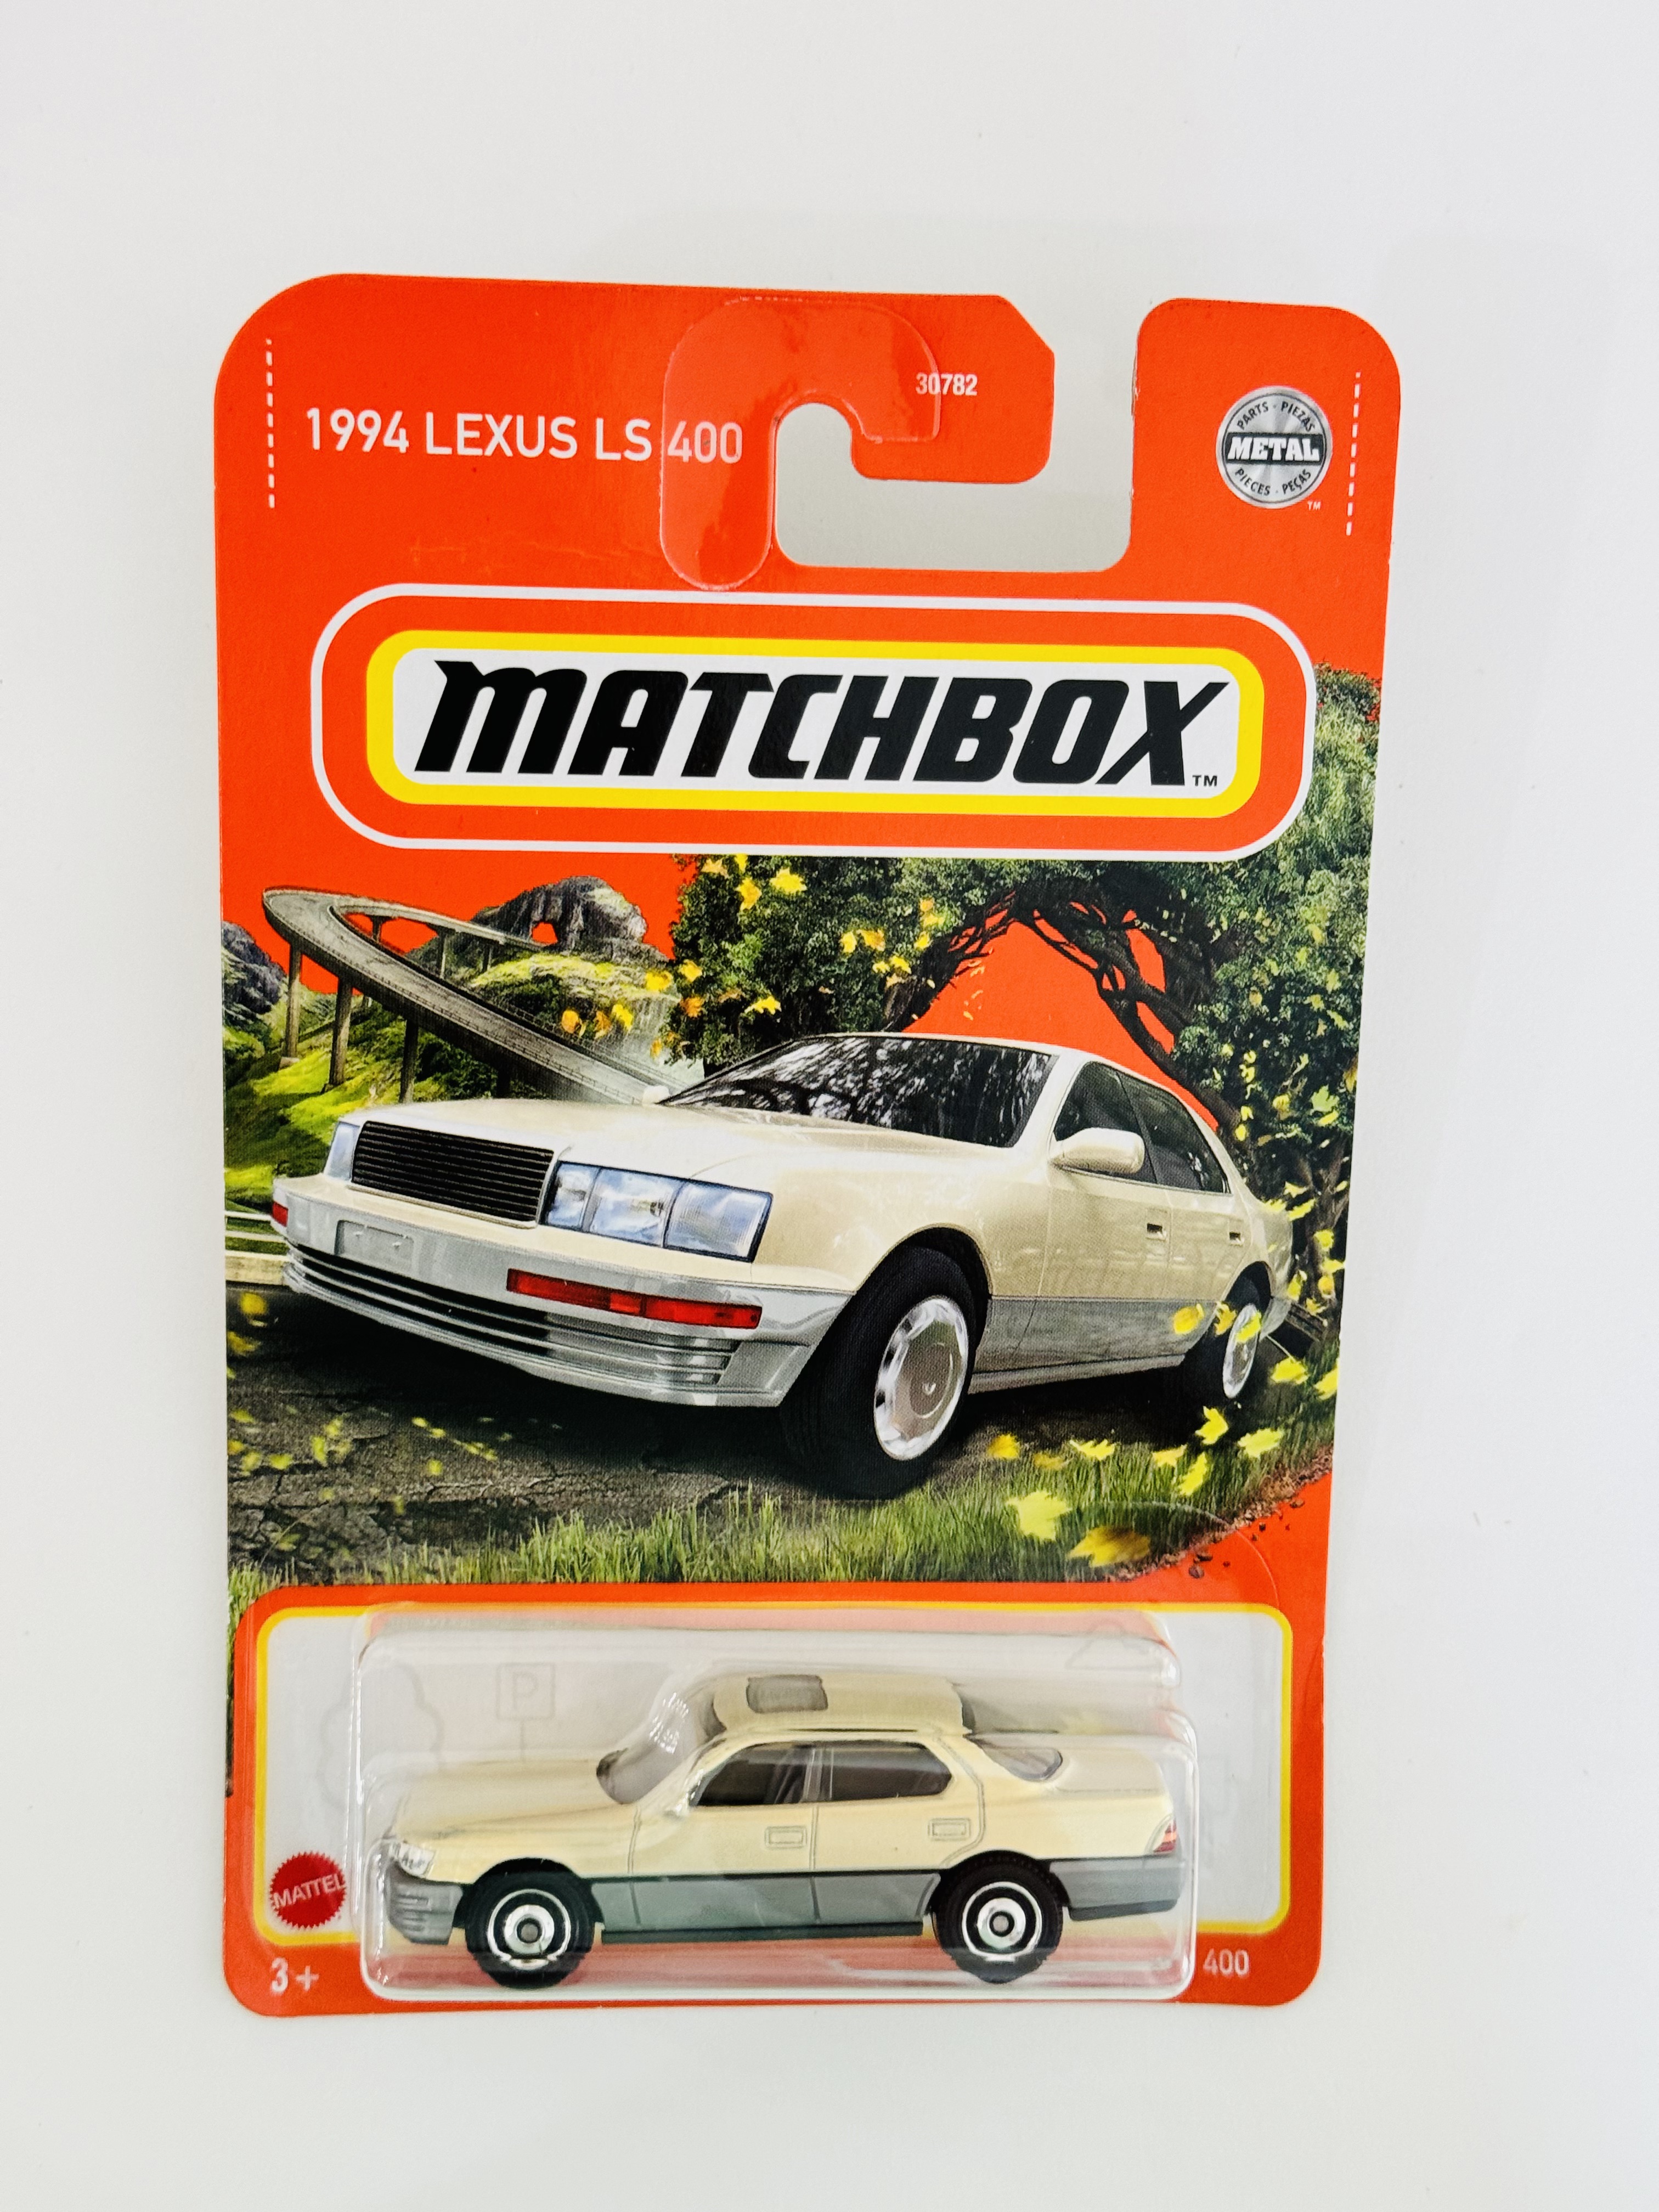 Matchbox 1994 Lexus LS 400